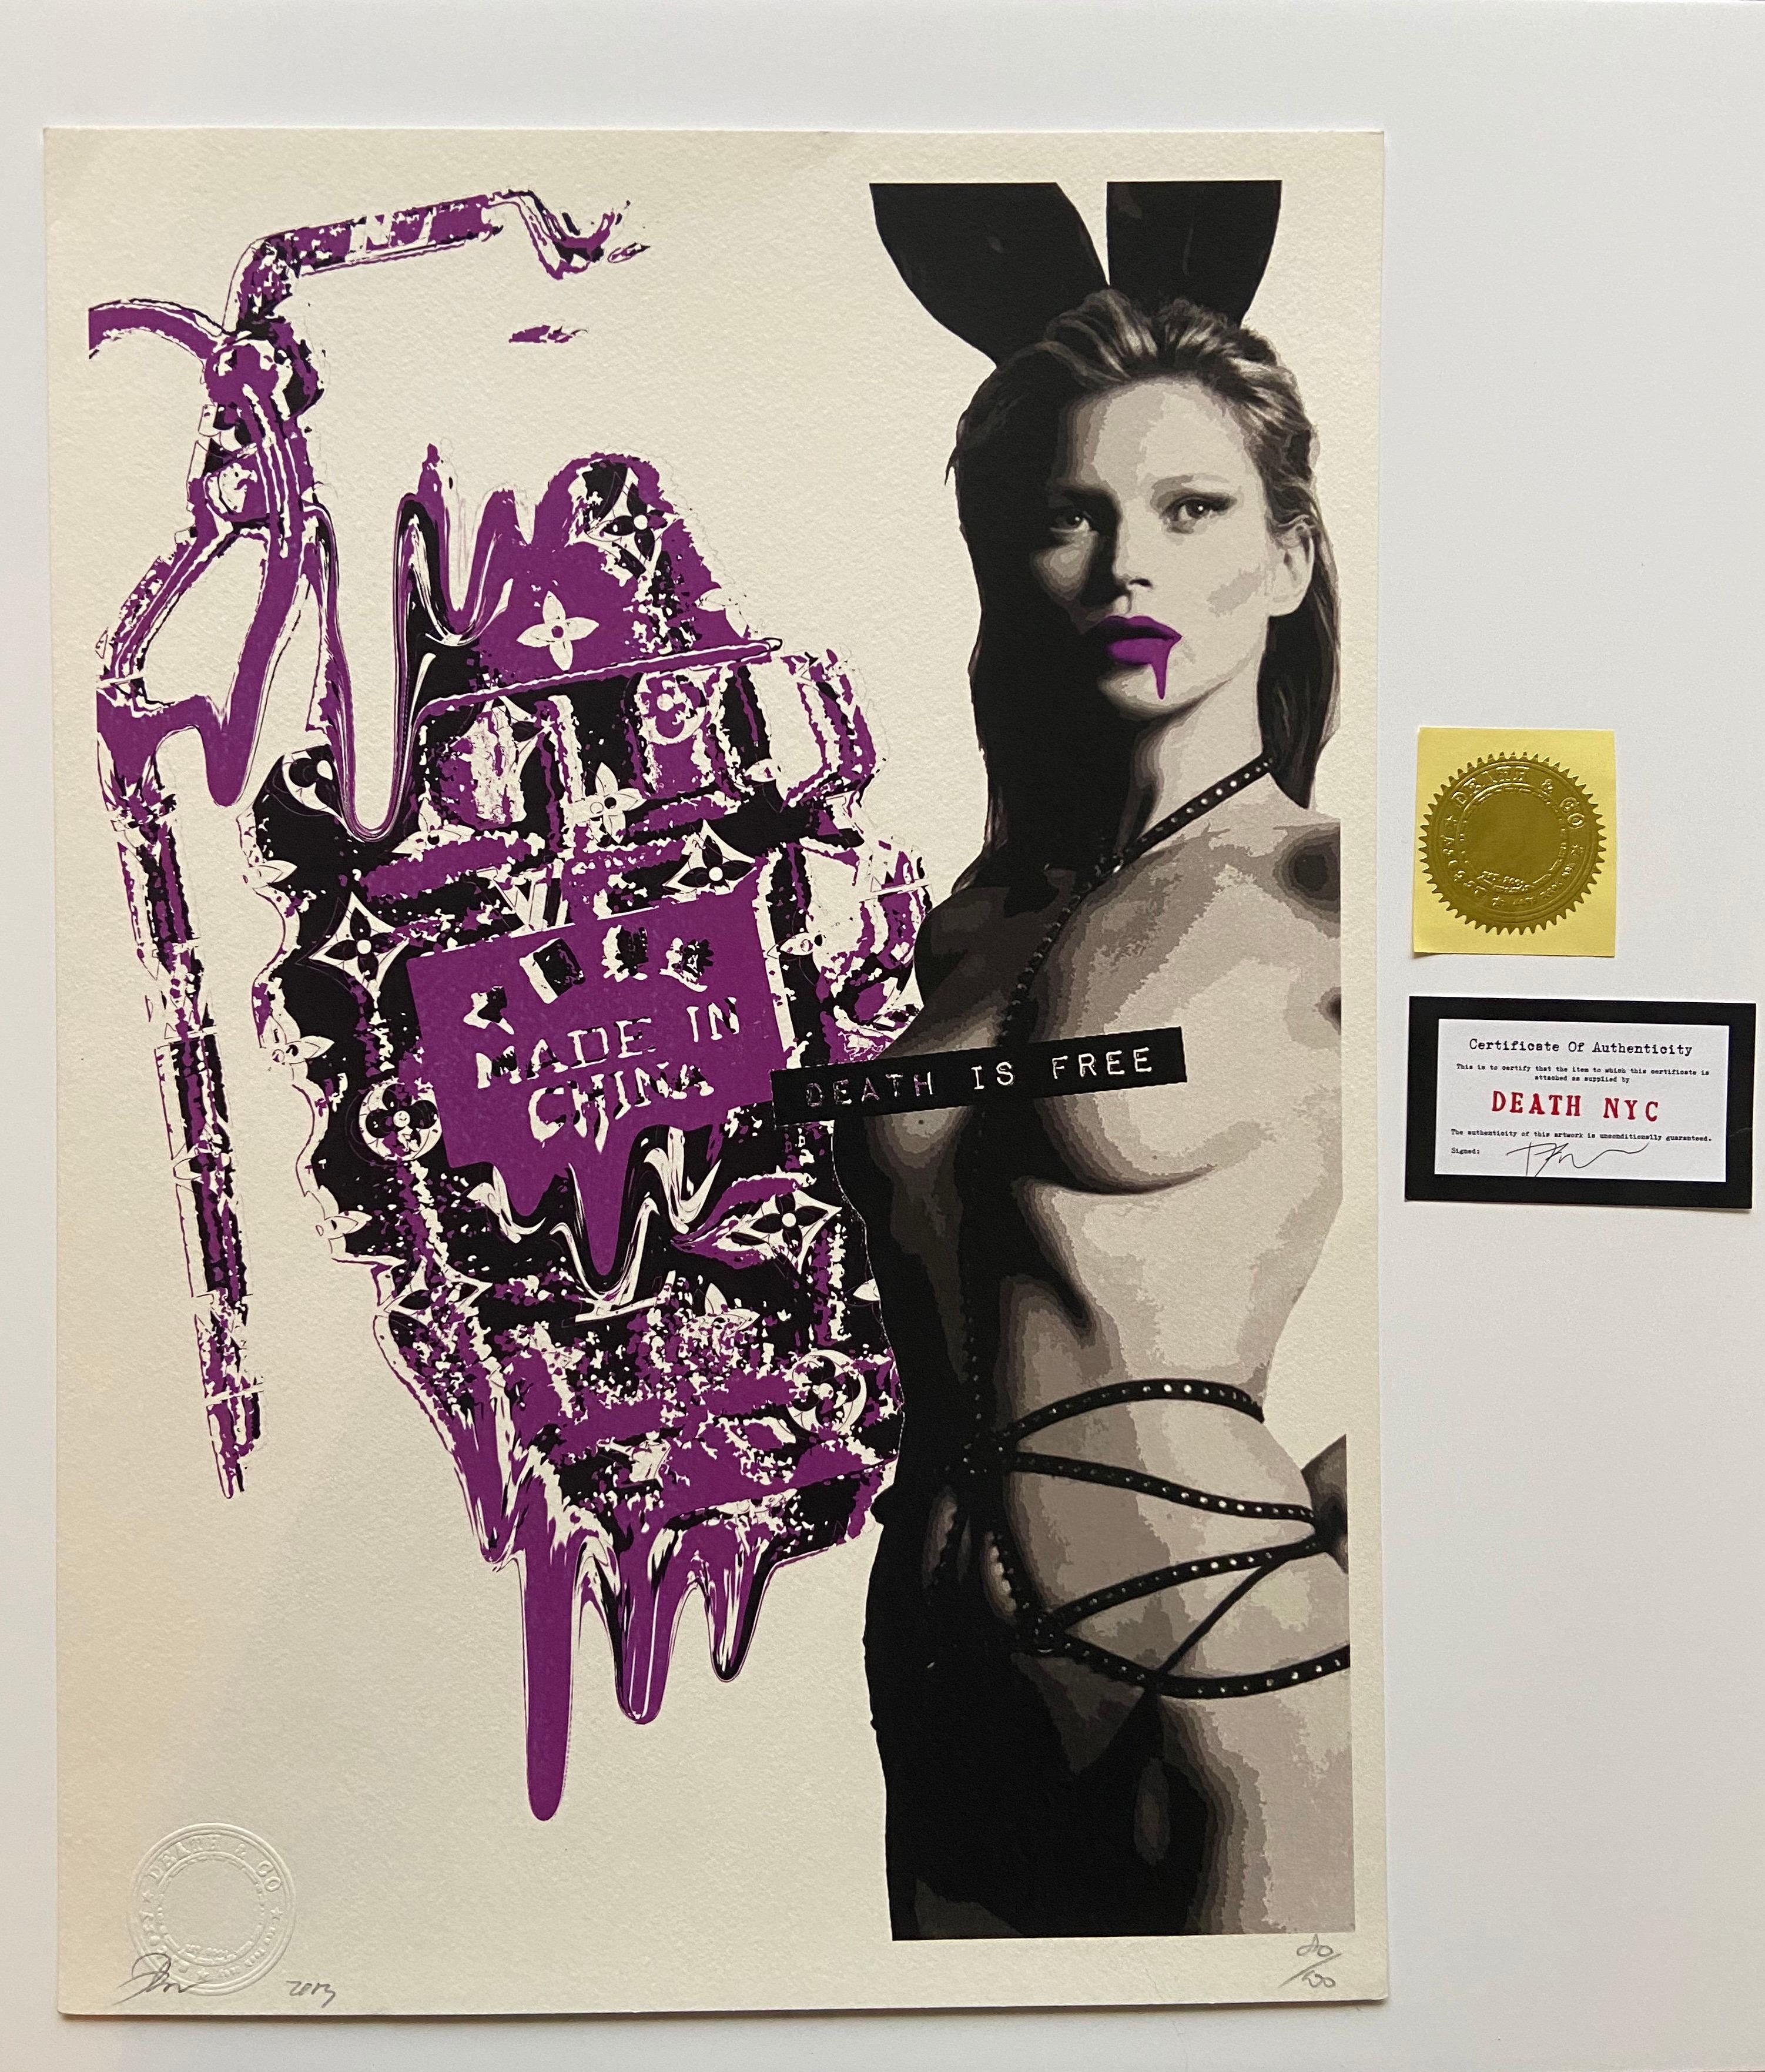 Tod NYC - Made in China Kate Moss - 2013 
Siebdruck signiert, nummeriert und datiert mit Bleistift
Trockener Stempel
2 Künstlerzertifikate
45 x 32 cm 
129 Euro